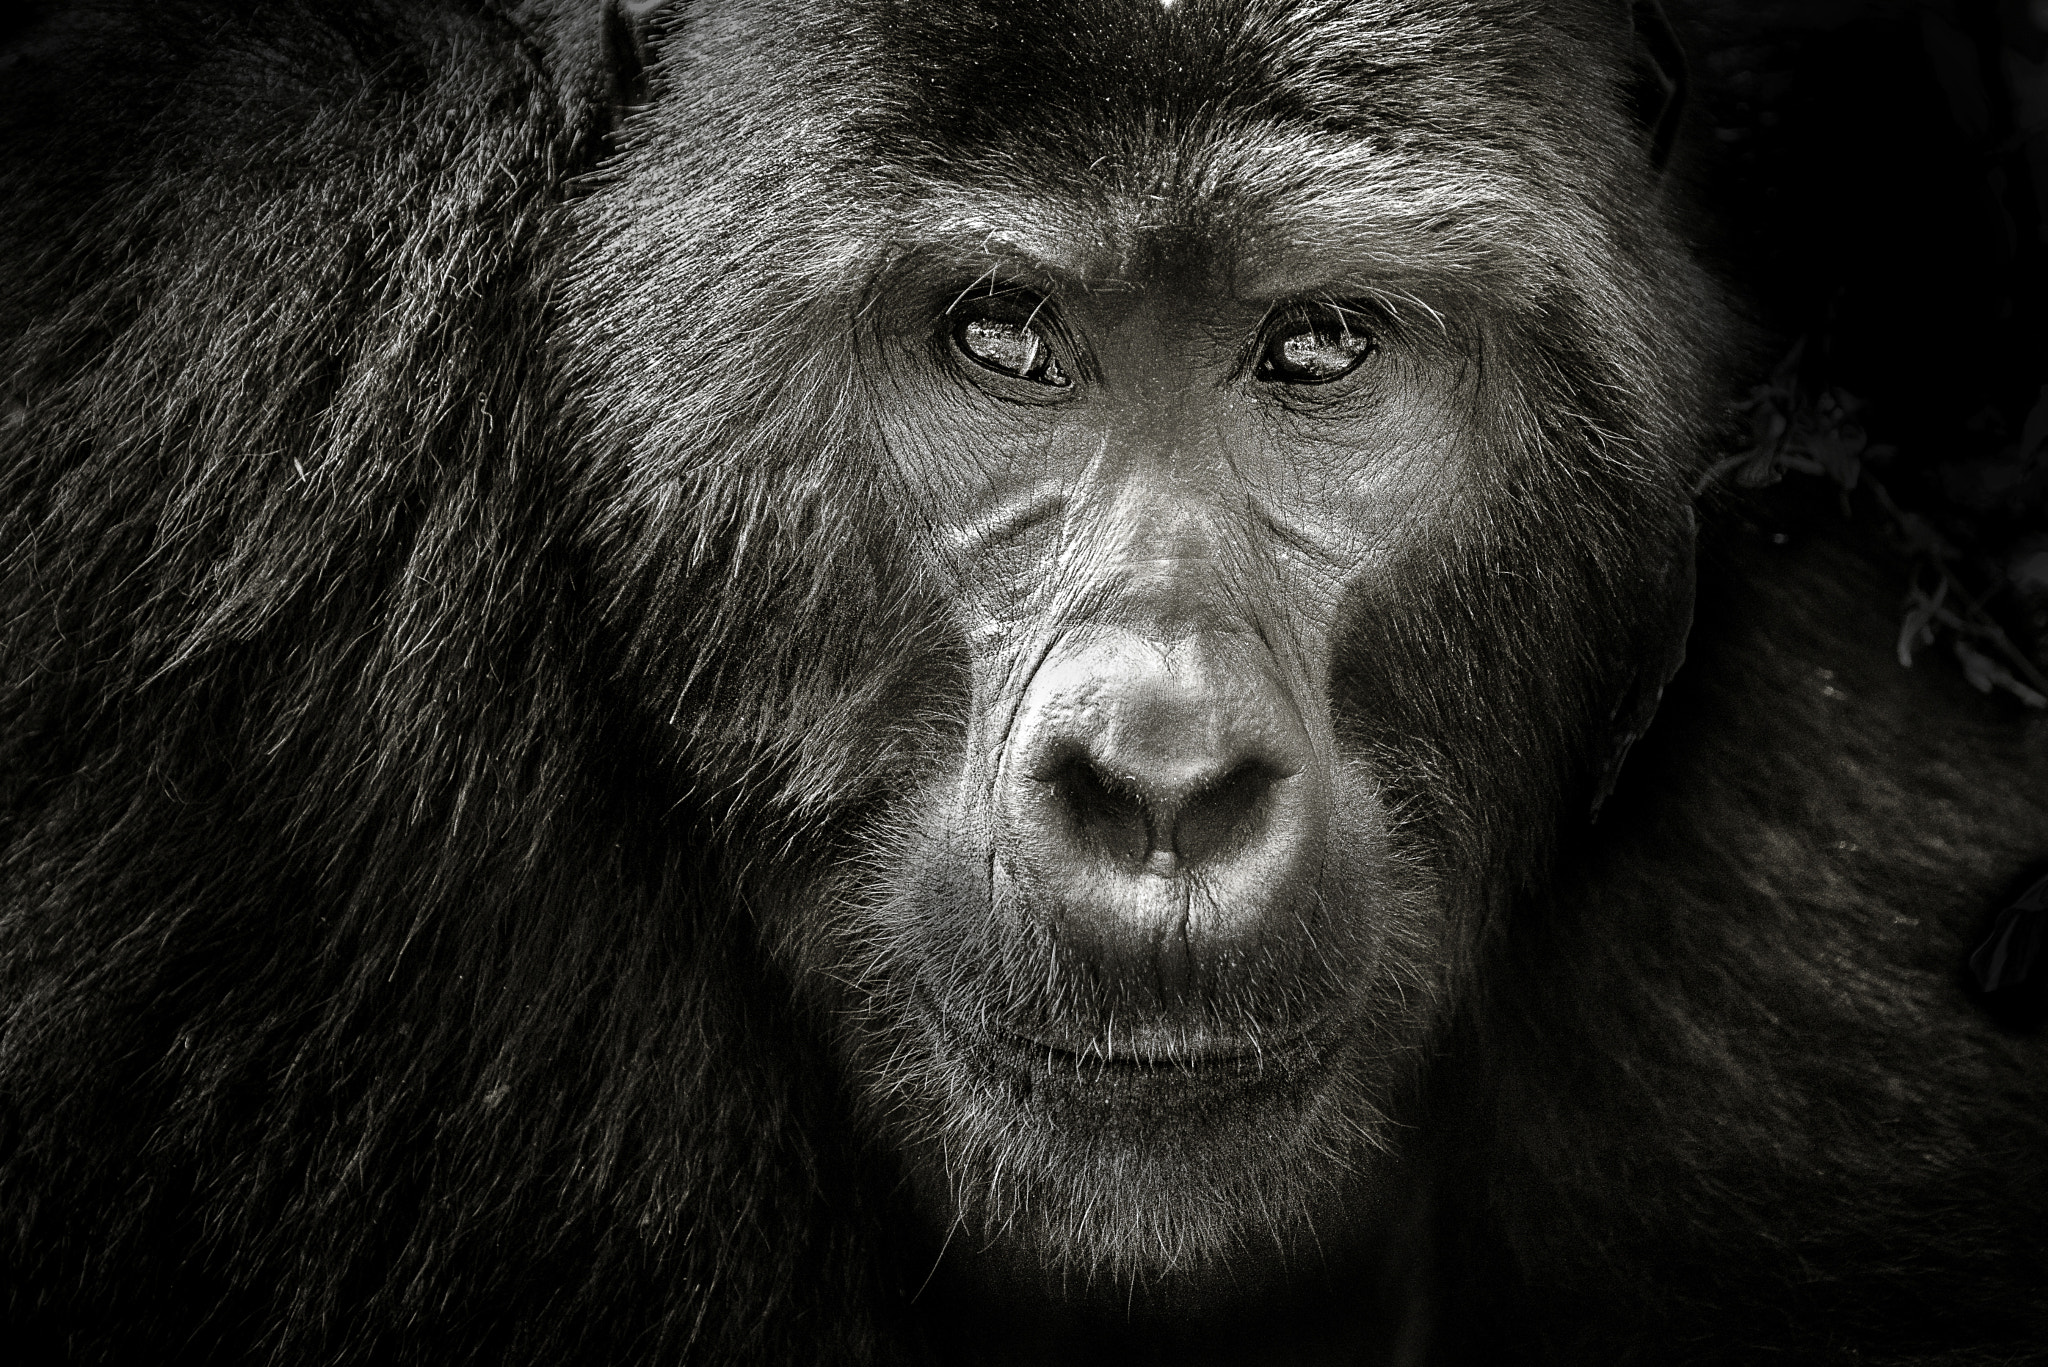 Nikon D800 + Nikon AF-S Nikkor 70-200mm F4G ED VR sample photo. Mountain gorilla photography